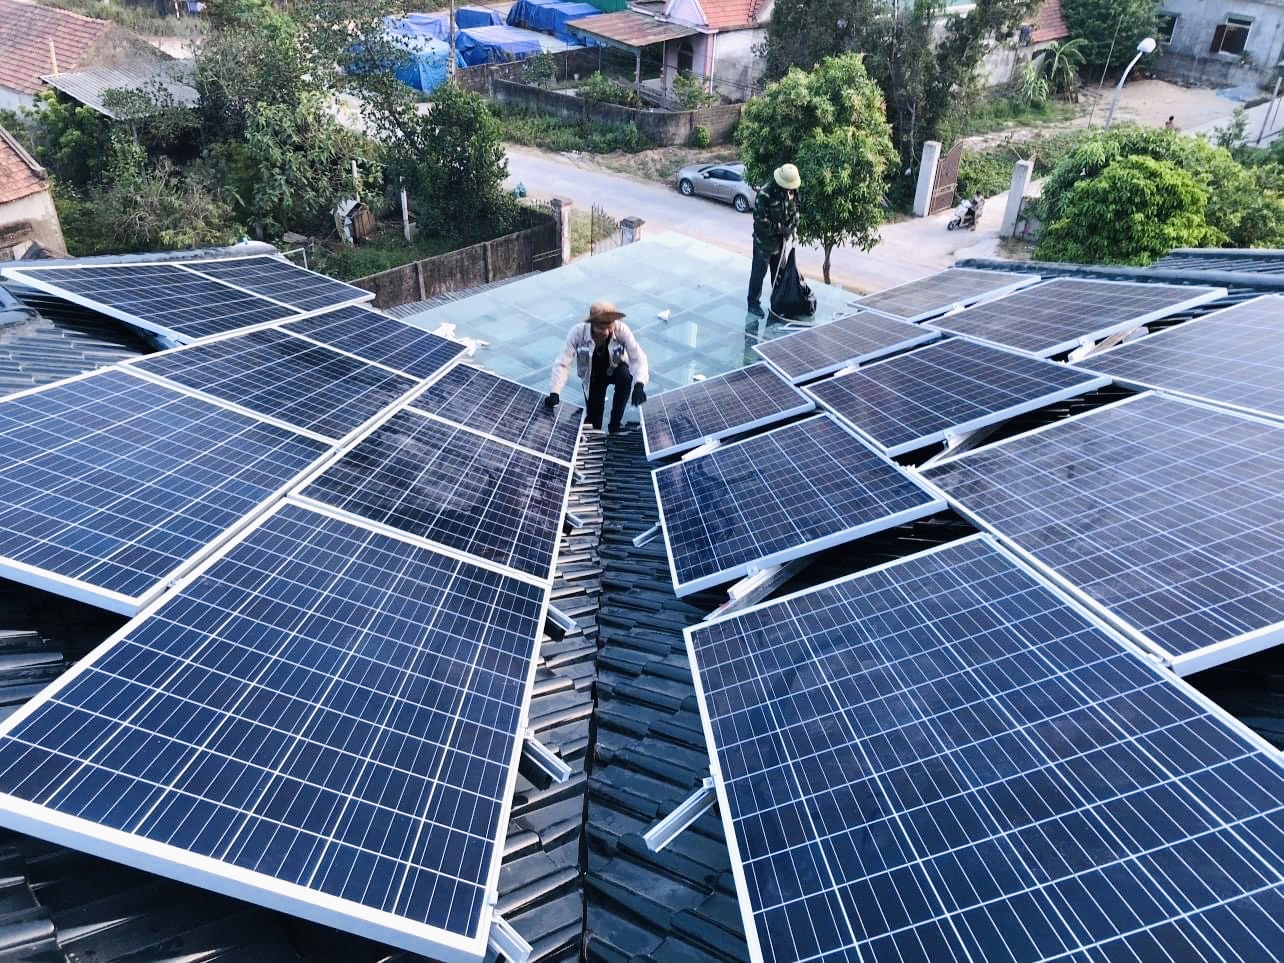 Thành Phố Vinh – Nghệ An khuyến khích, kích cầu lắp đặt điện năng lượng mặt trời
